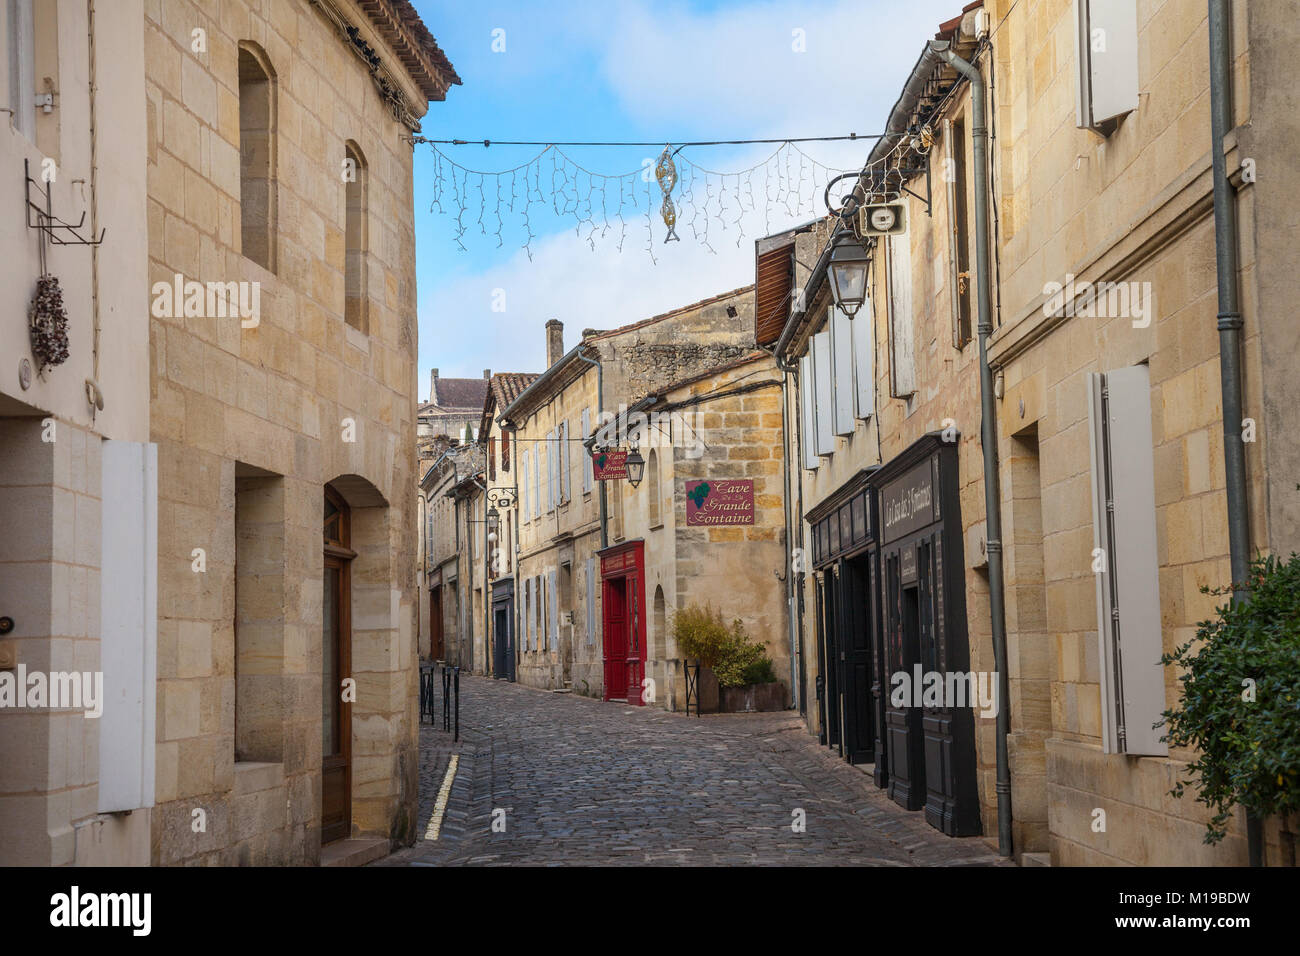 SAINT EMILION, FRANCE - 25 décembre 2017 : rue principale de la cité médiévale de Saint Emilion. Boutiques de vin peut être vu sur les côtés. Saint Emilion, famo Banque D'Images